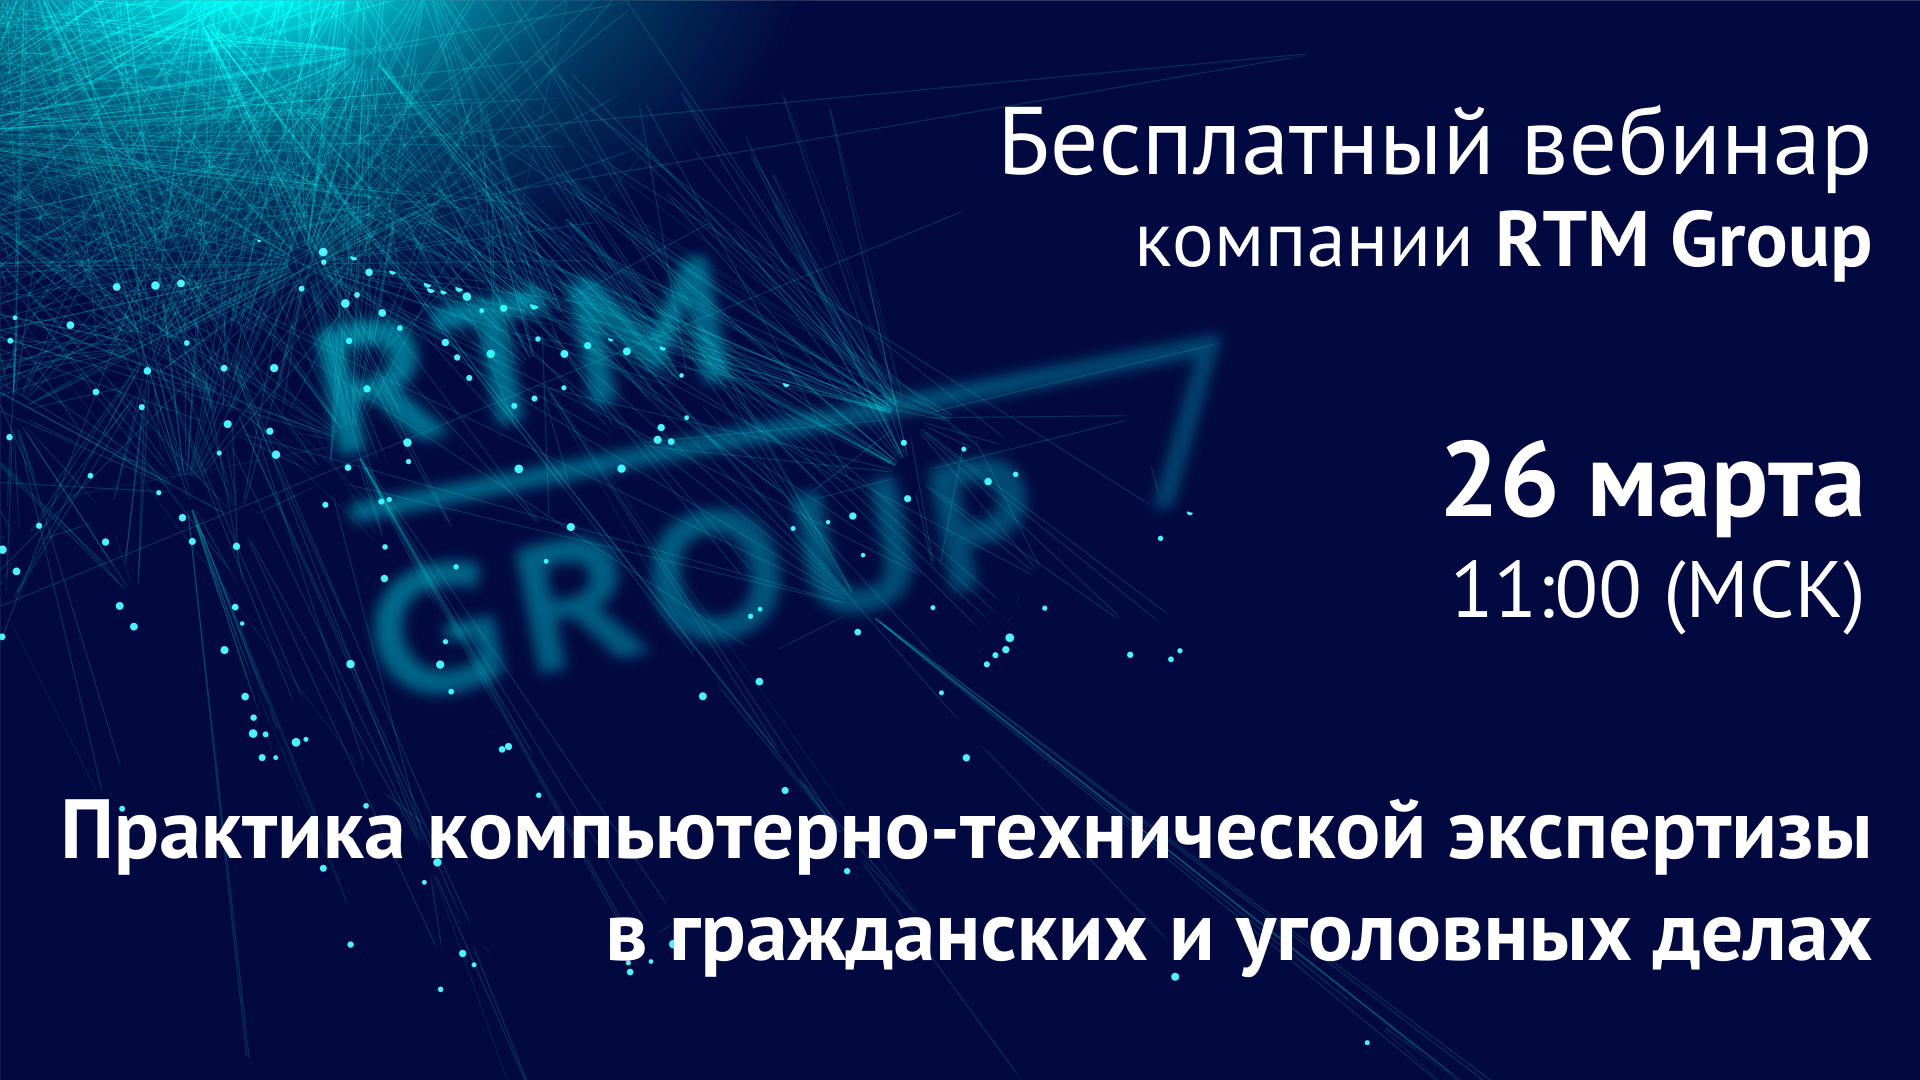 Вебинар RTM Group: «Практика компьютерно-технической экспертизы в гражданских и уголовных делах»